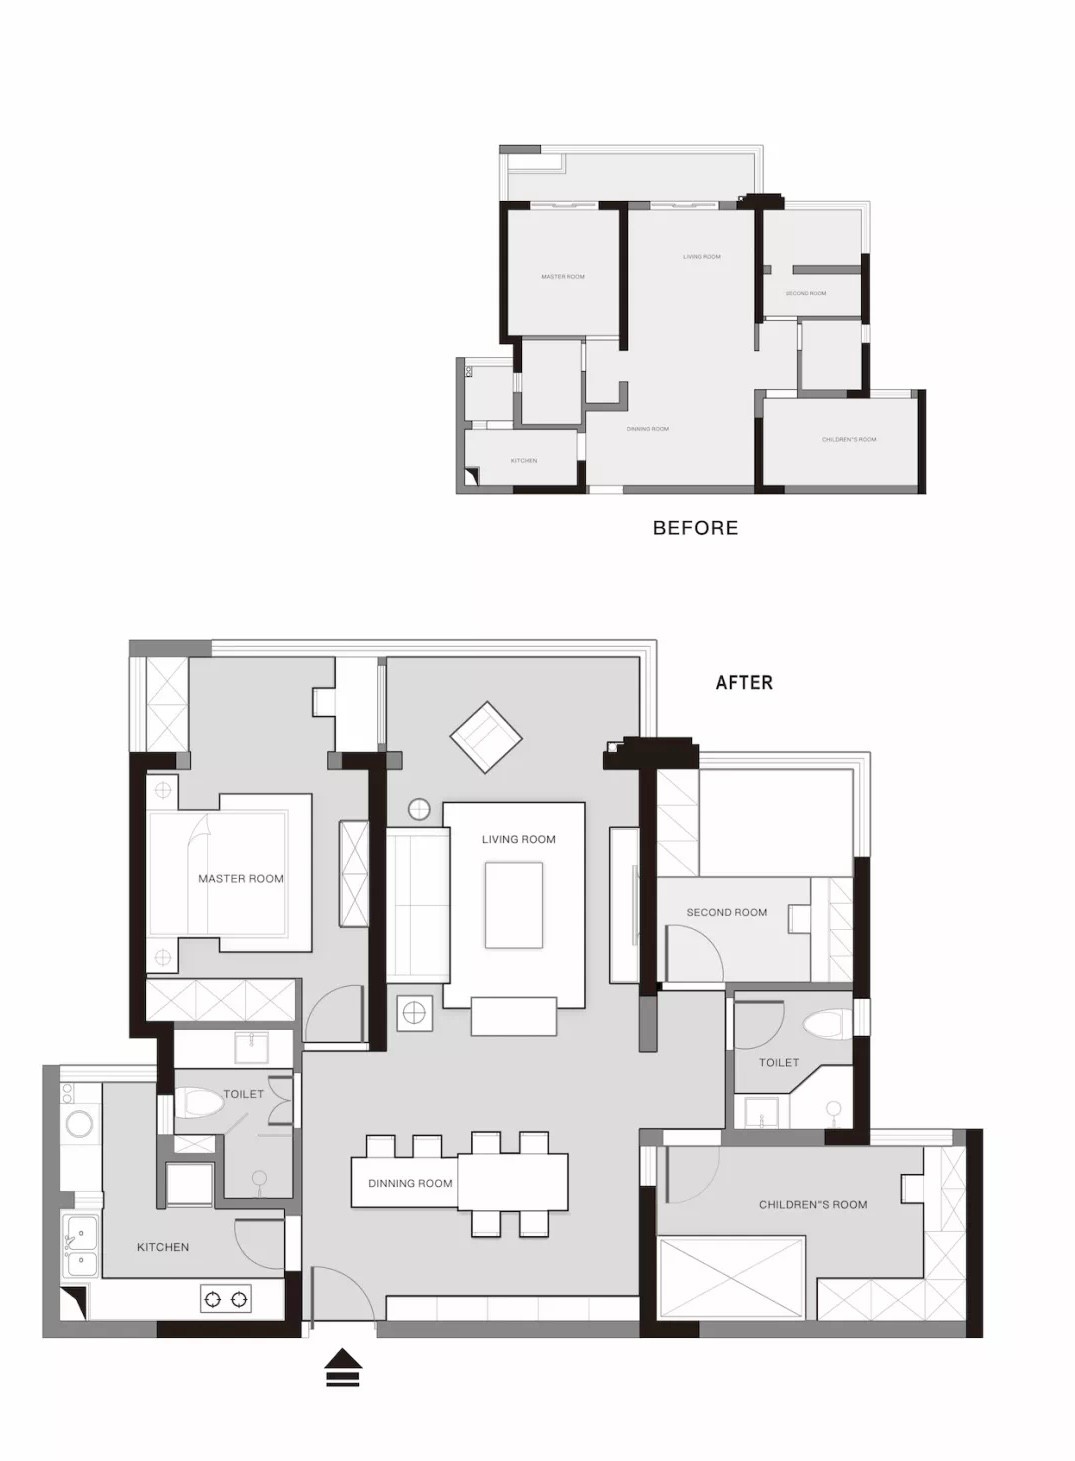 110美式三房装修效果图,110平米的混搭三居。装修案例效果图-美广网(图1)